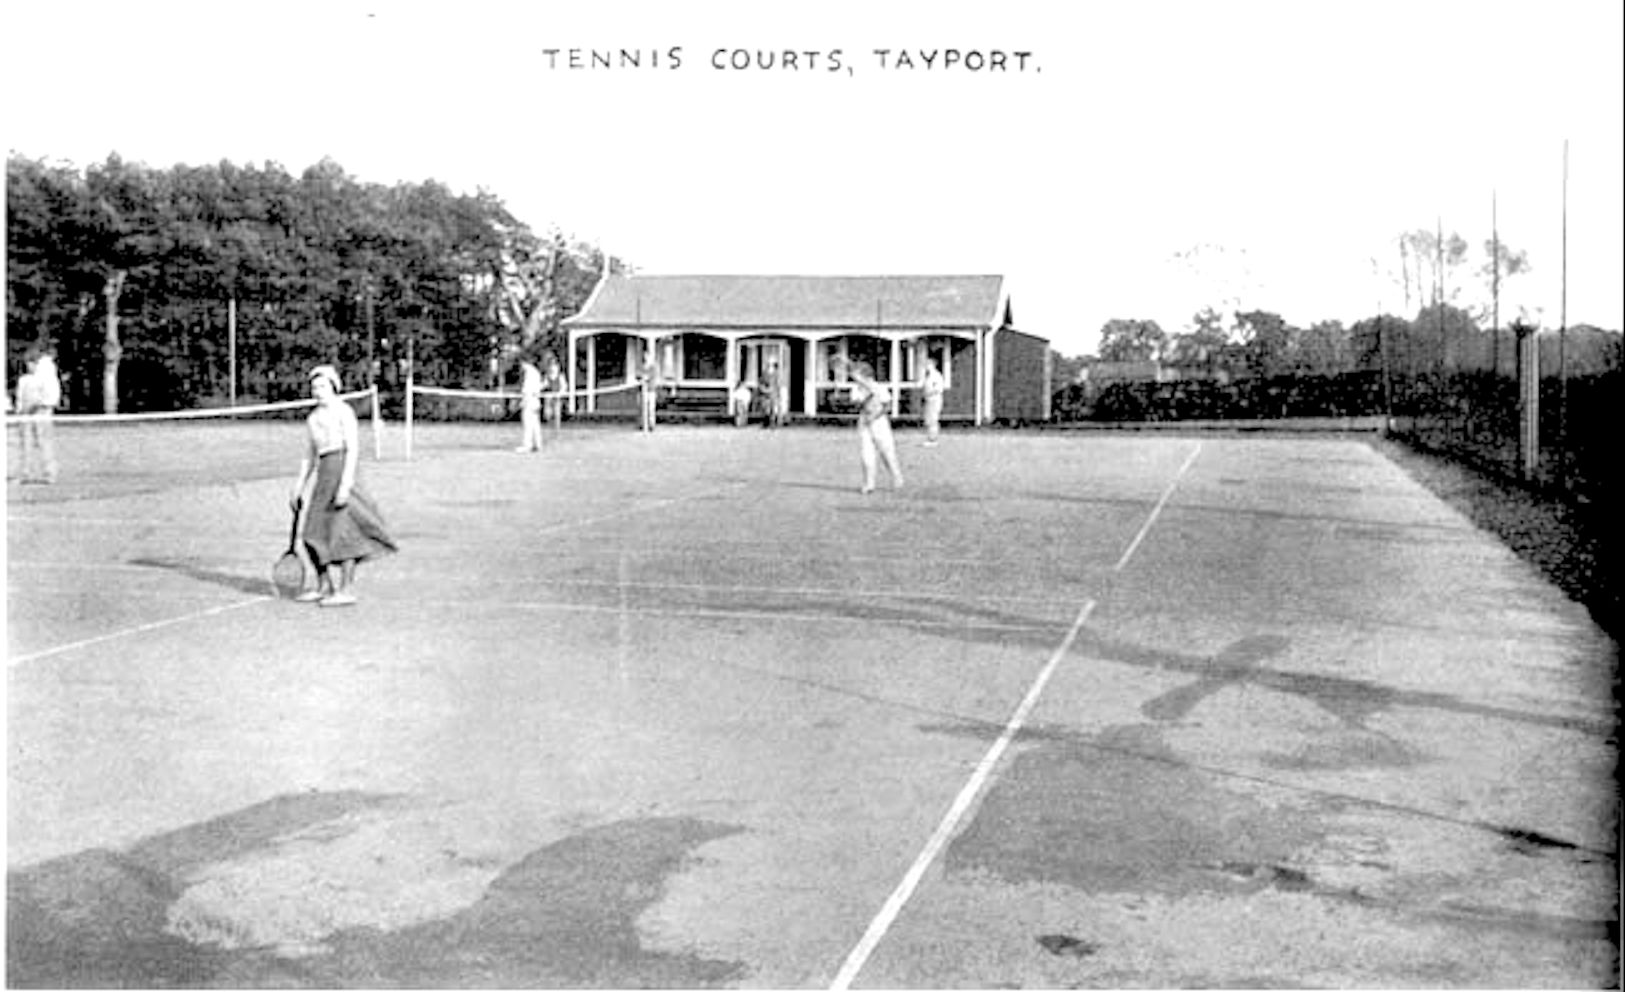 Tayport Heritage Trail - Board 14 - Tennis Club facilities 1950s